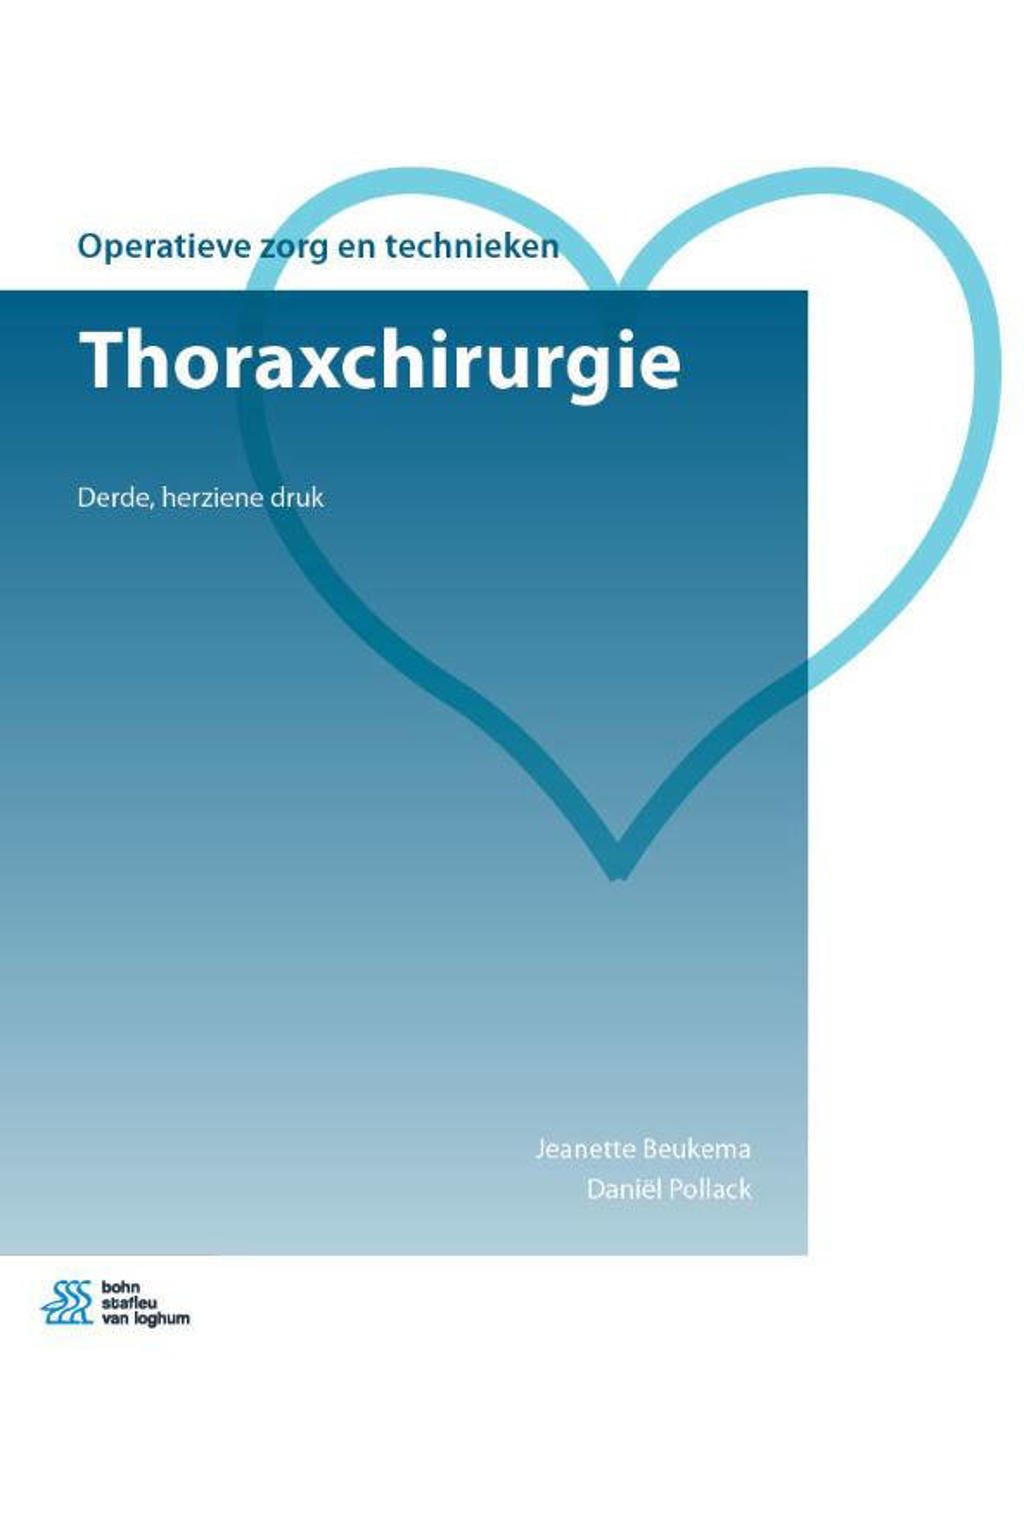 Operatieve zorg en technieken: Thoraxchirurgie - Jeanette Beukema en Daniël Pollack